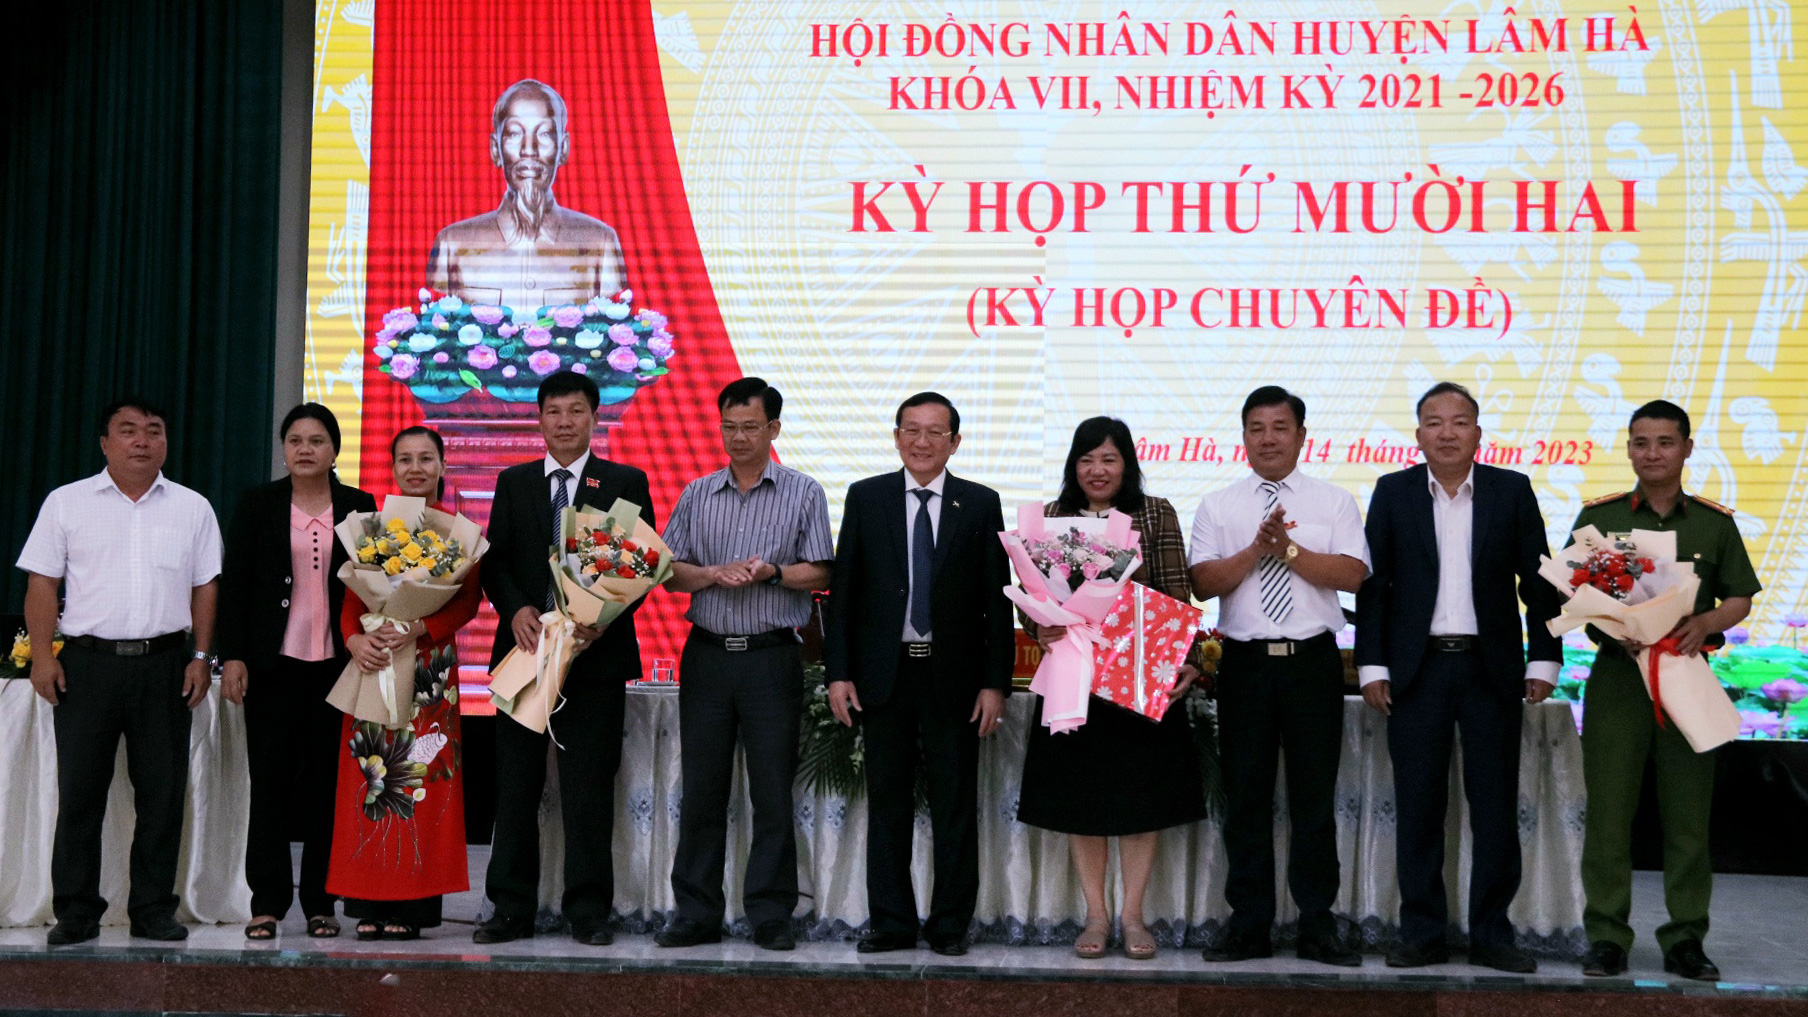 HĐND huyện Lâm Hà tổ chức kỳ họp lần thứ 12, nhiệm kỳ 2021 - 2026